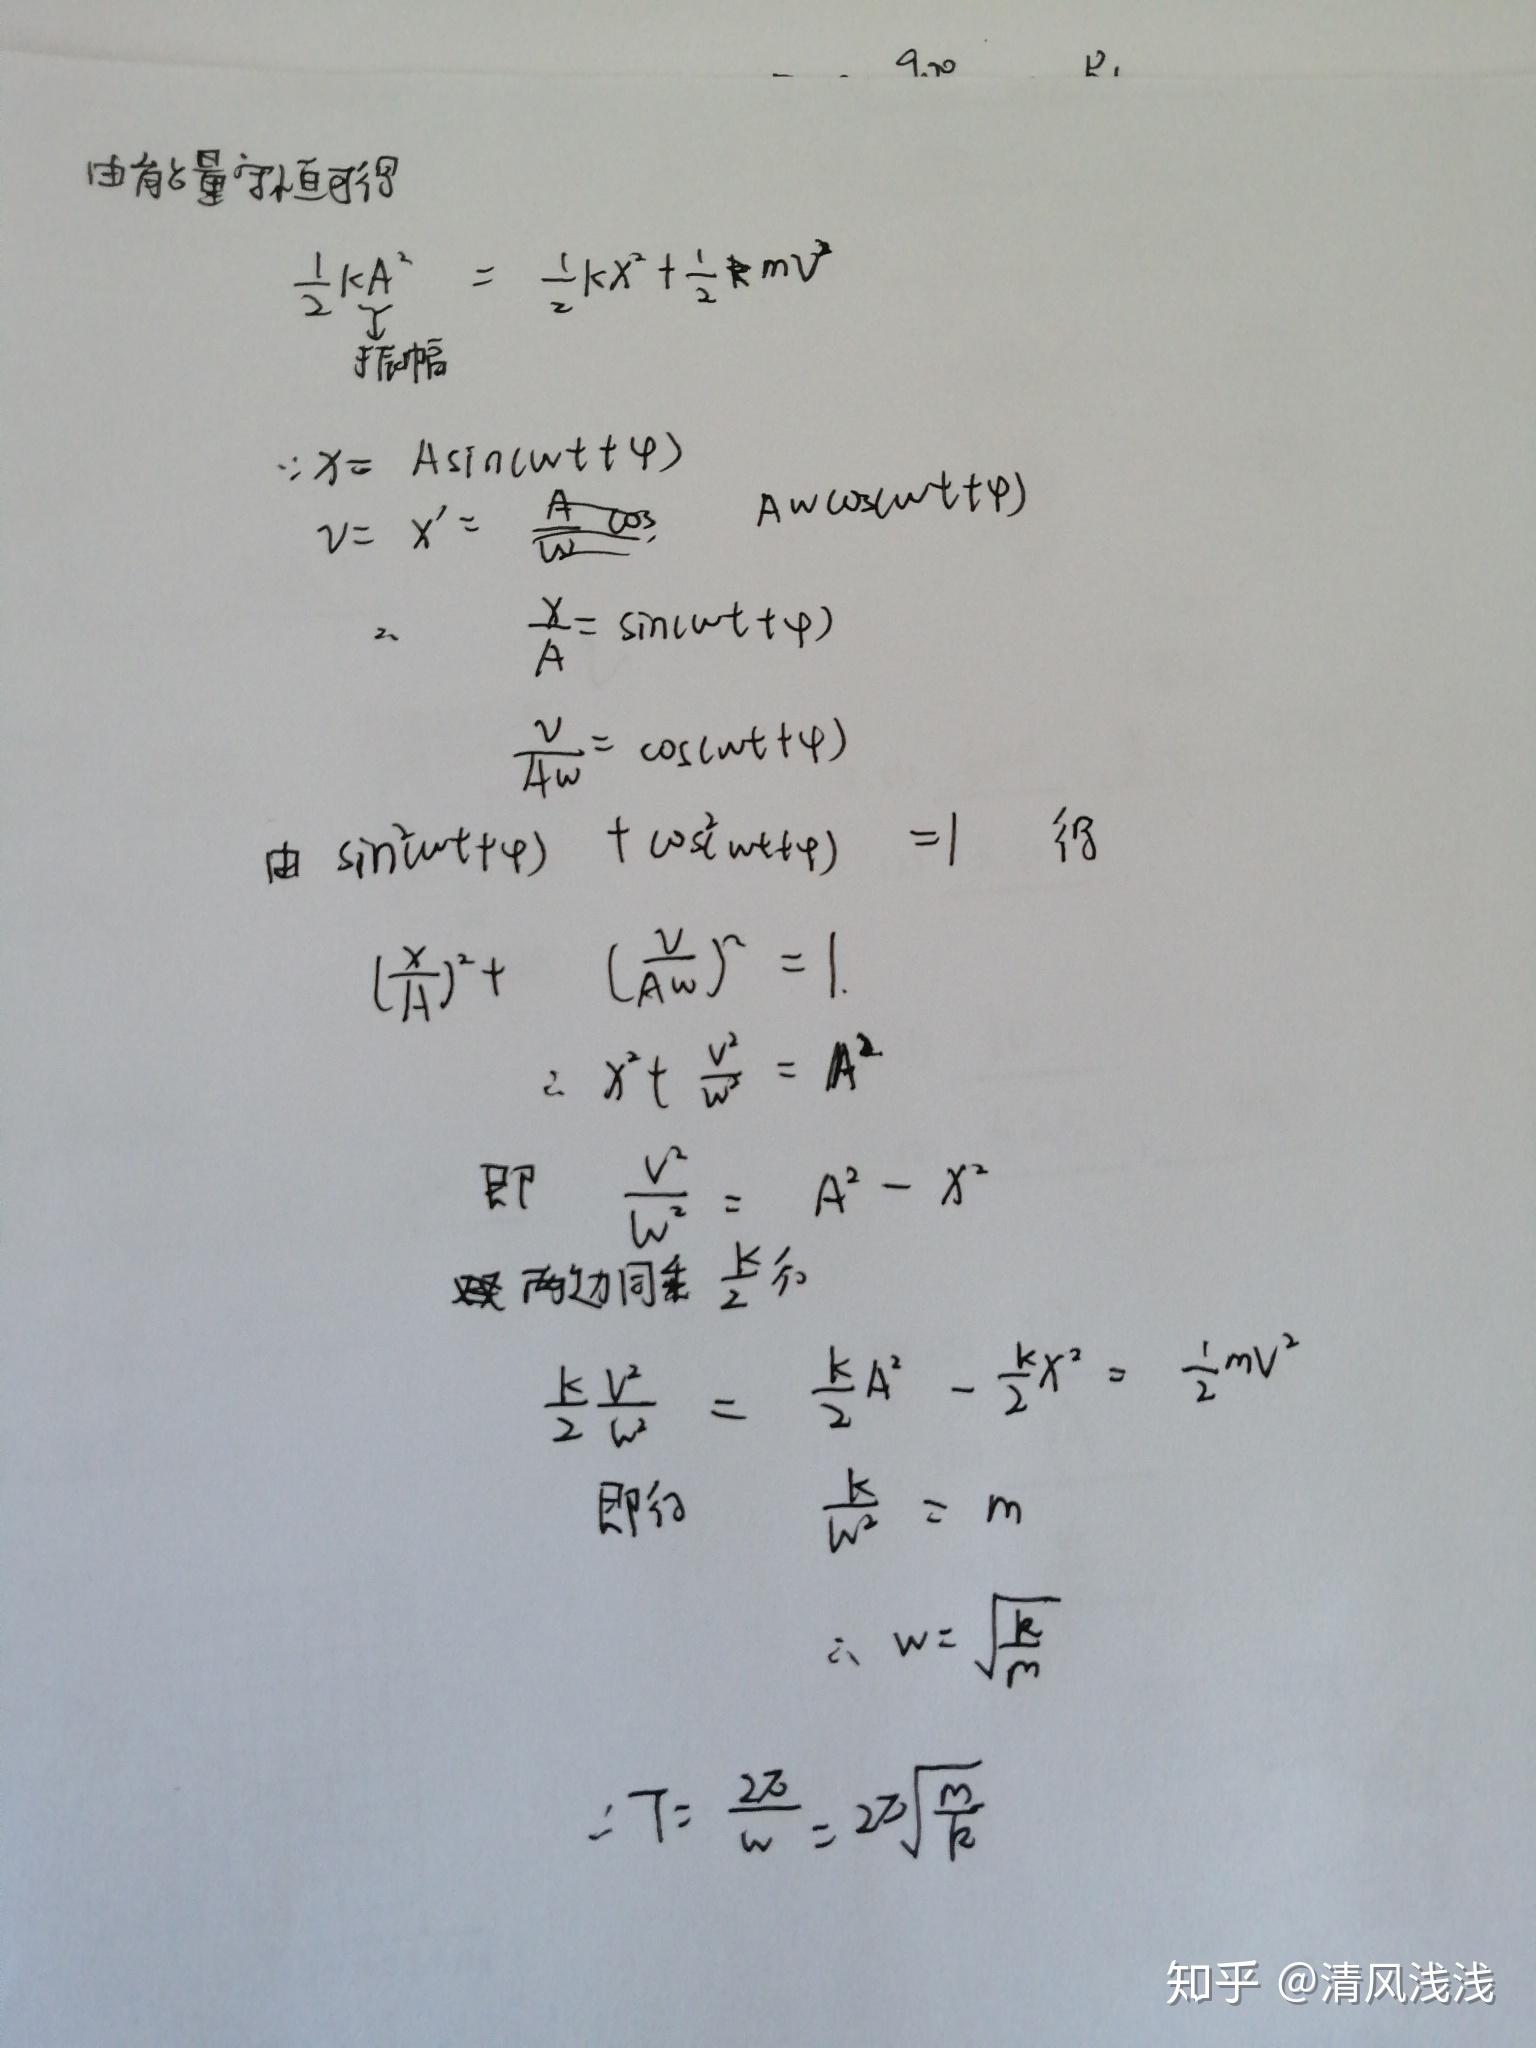 弹簧振子的周期公式:T=2π(m\/k)½如何推导?